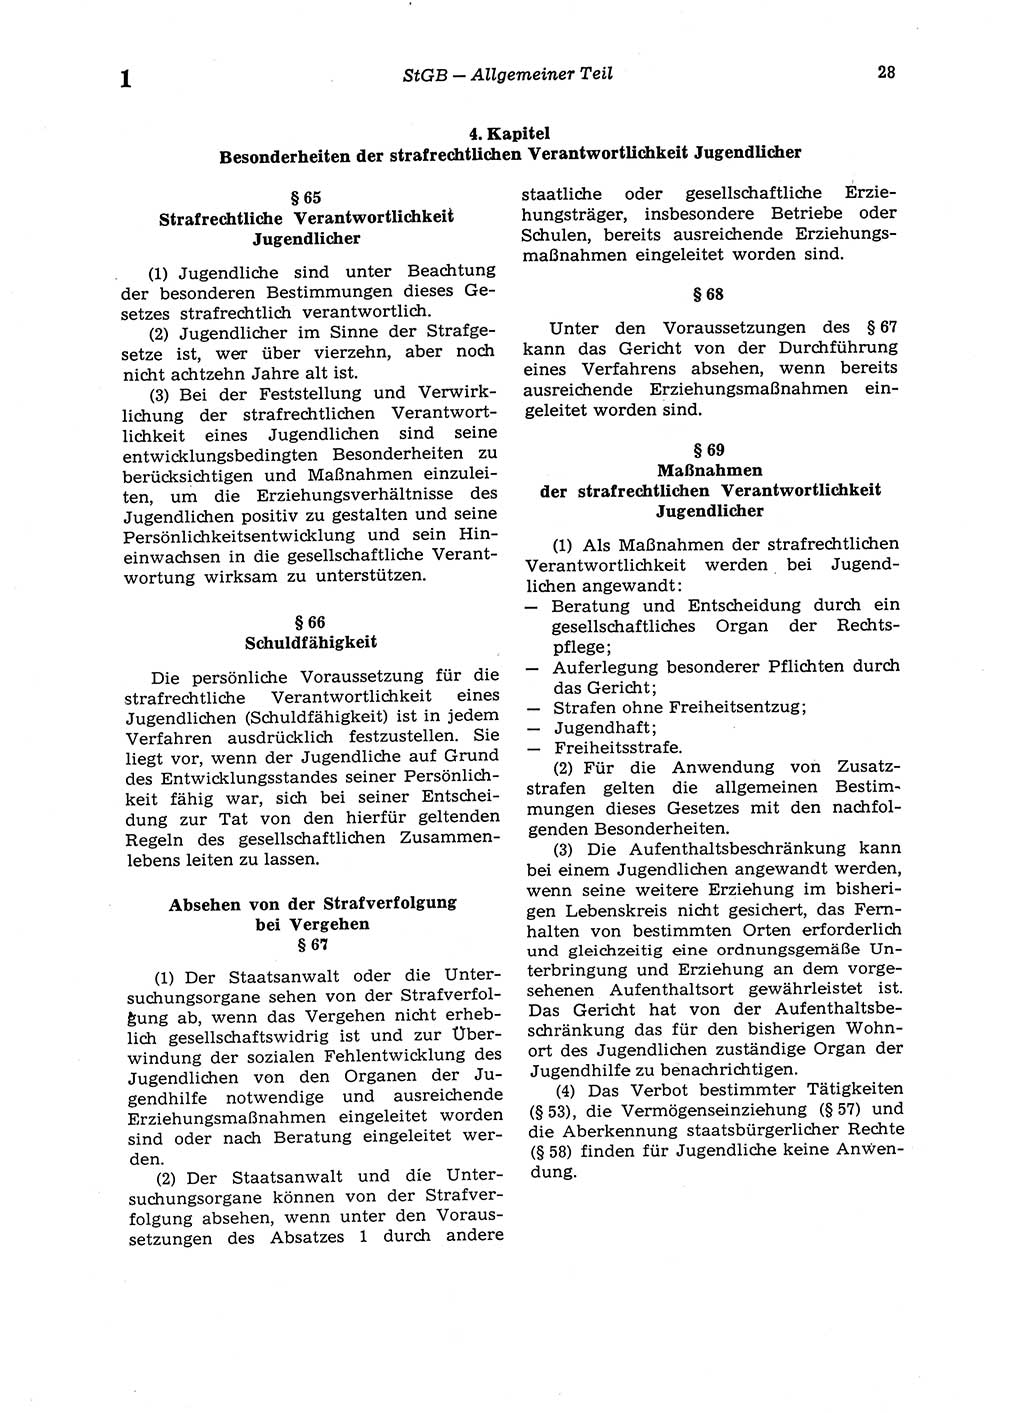 Strafgesetzbuch (StGB) der Deutschen Demokratischen Republik (DDR) 1987, Seite 28 (StGB DDR 1987, S. 28)